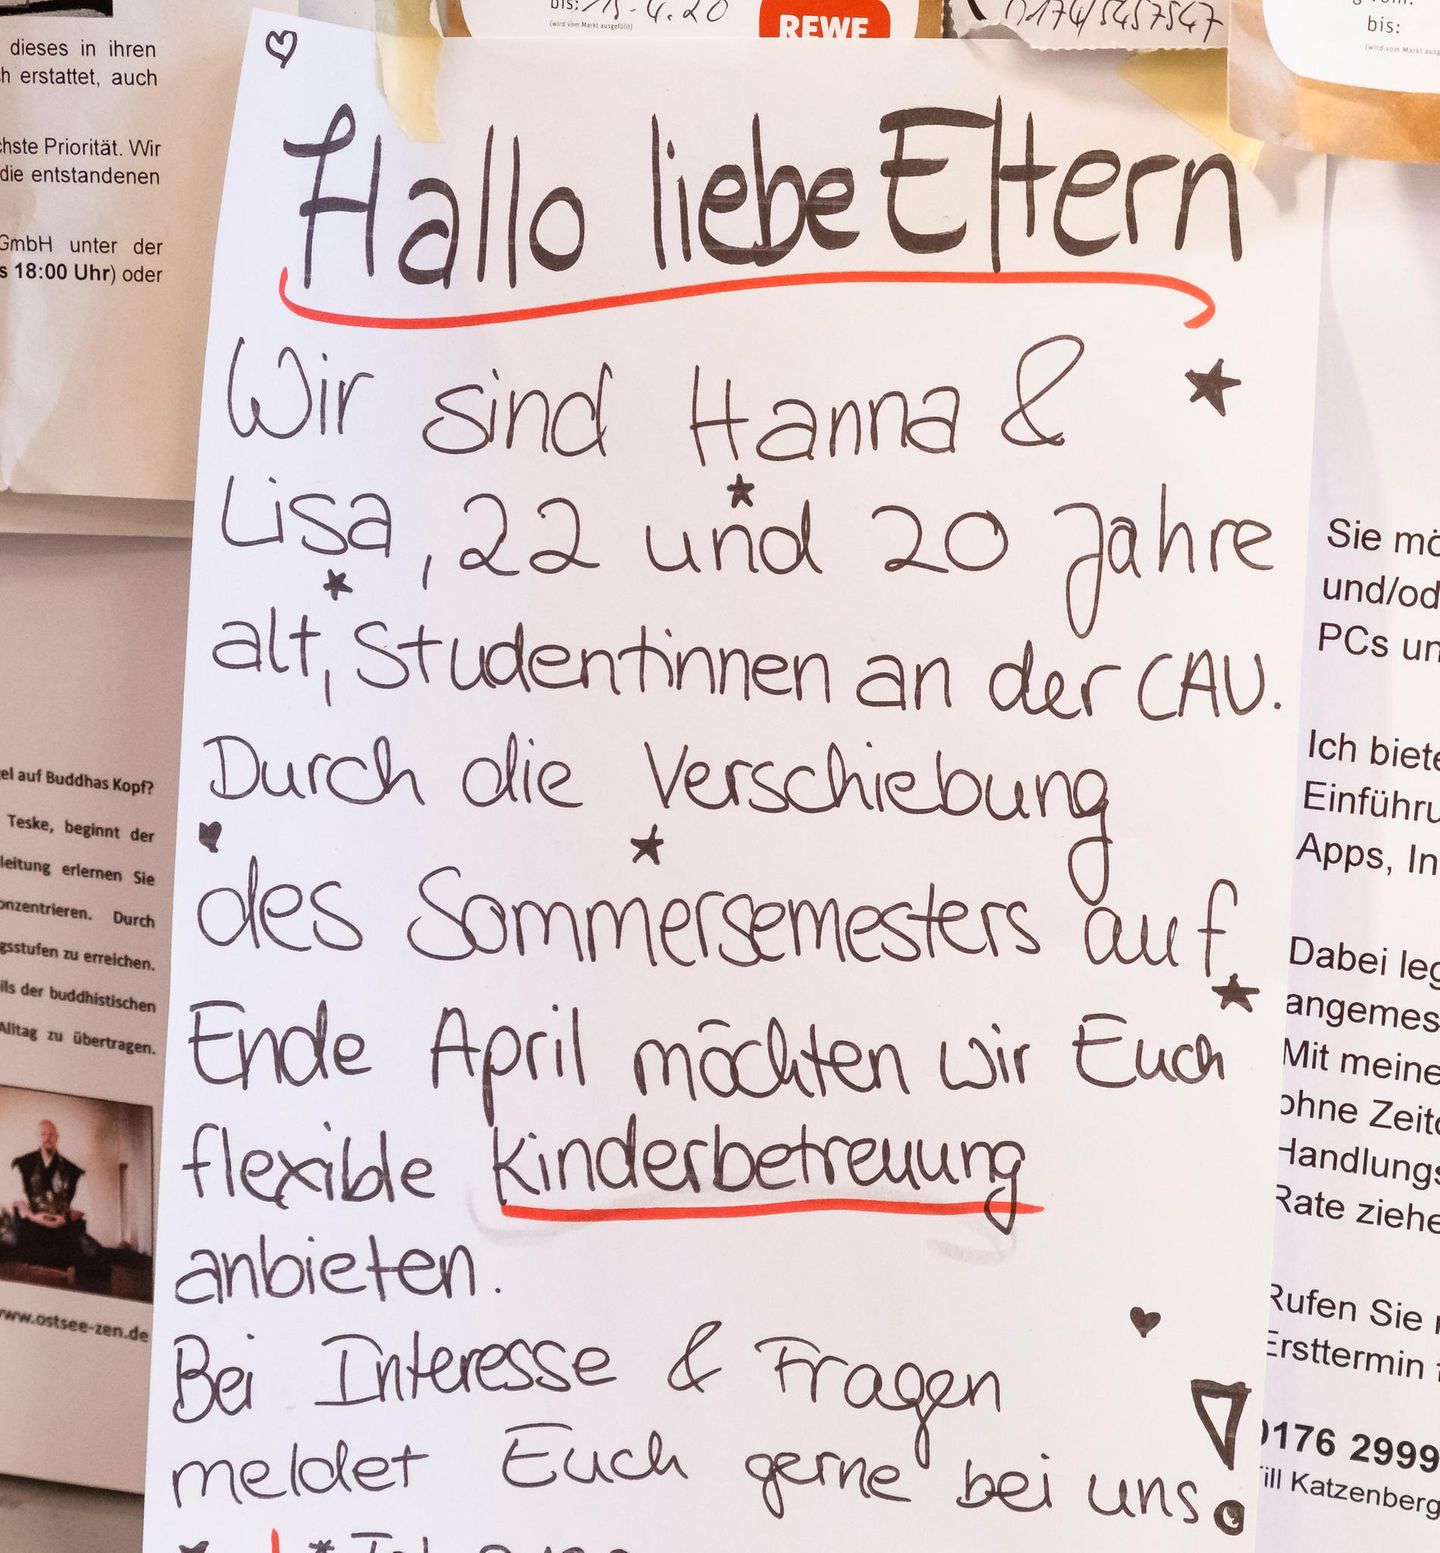 Bild 1 der Fotostrecke zum Klicken: Nachbarschaftshilfe in den Zeiten des Coronavirus - Zettel an der Pinnwand eines Supermarktes in Kiel.